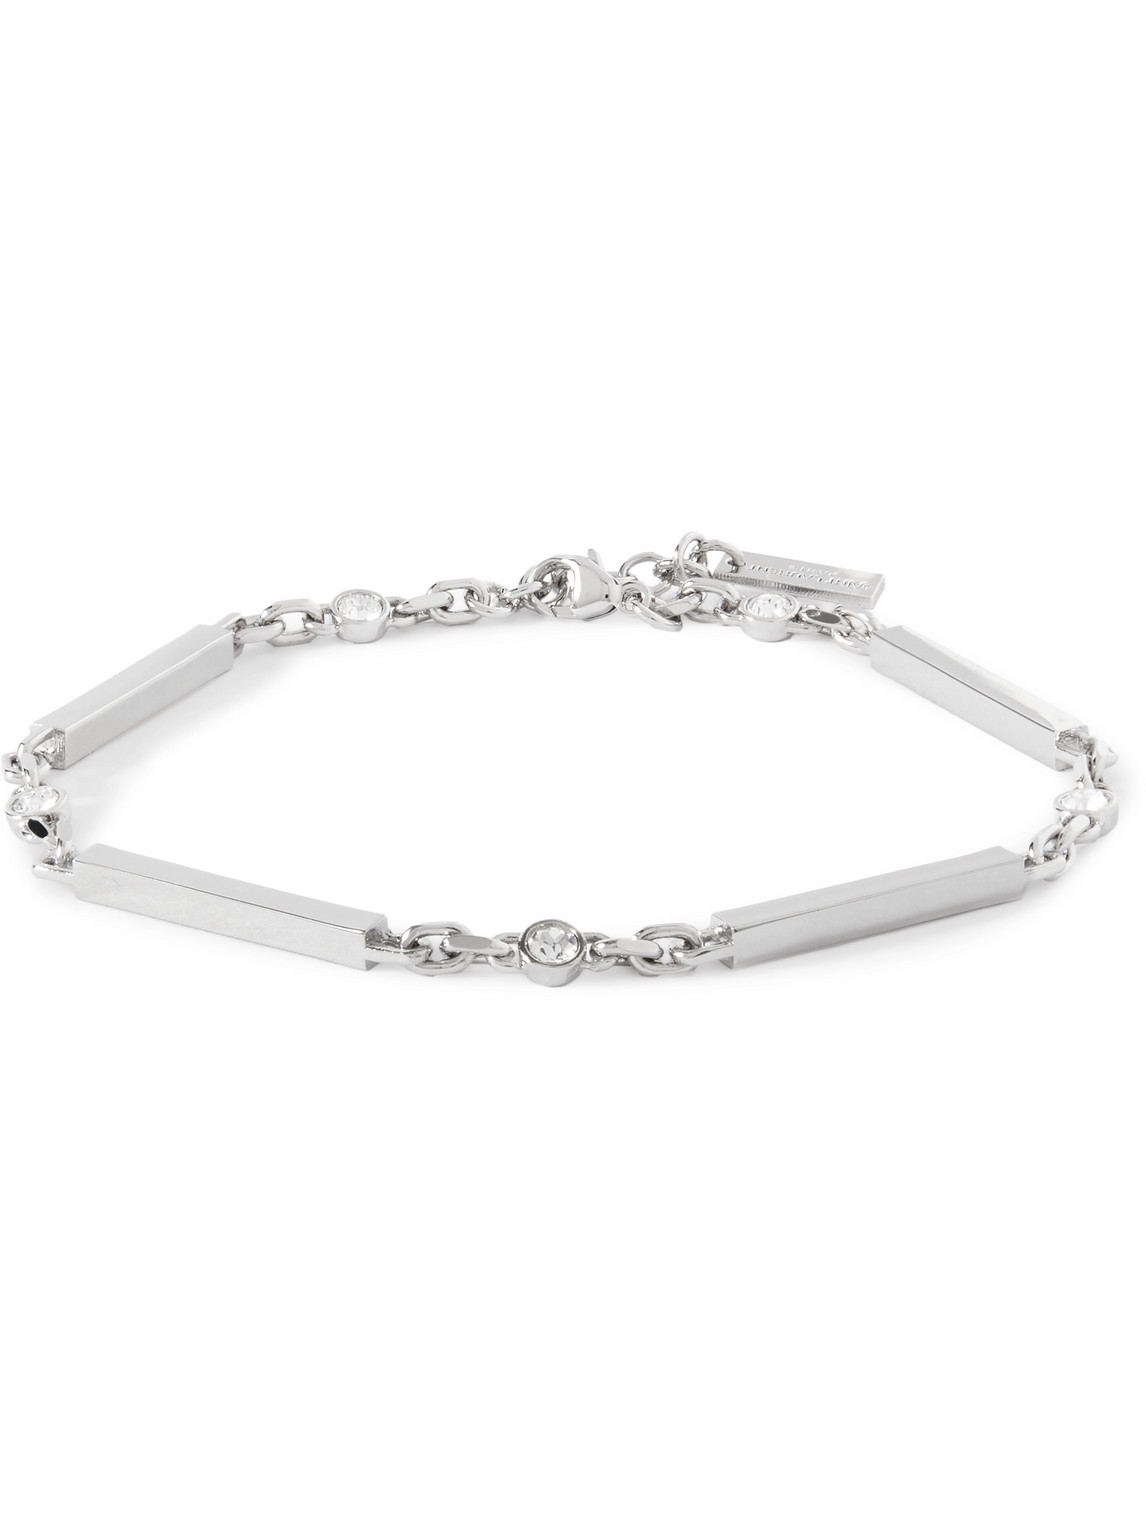 Saint Laurent Silver-tone Crystal Bracelet